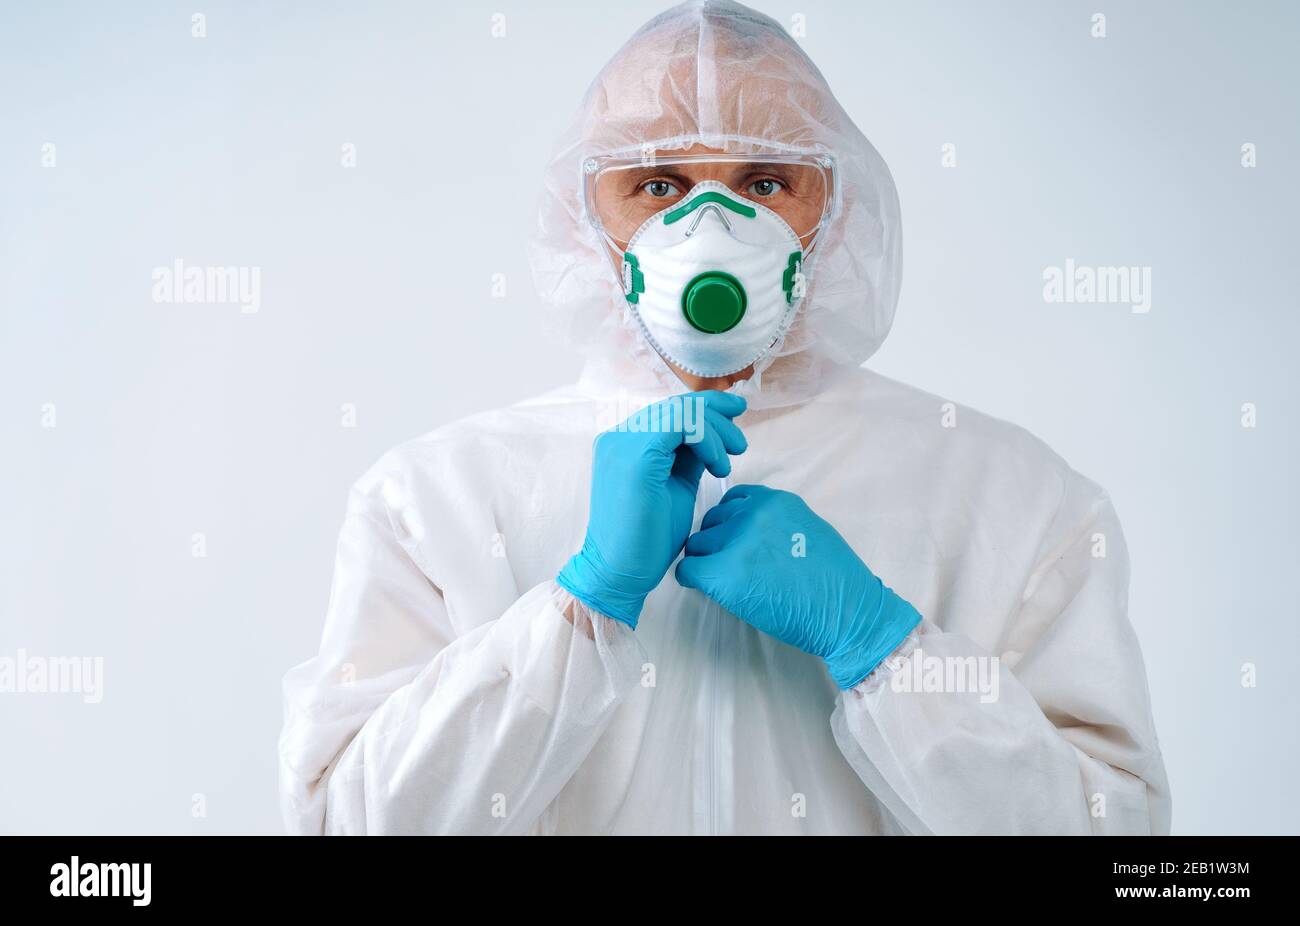 Gesundheitsarbeiter in Schutzanzug und medizinische Maske bereit zu arbeiten. Gesundheitskonzept. Stockfoto